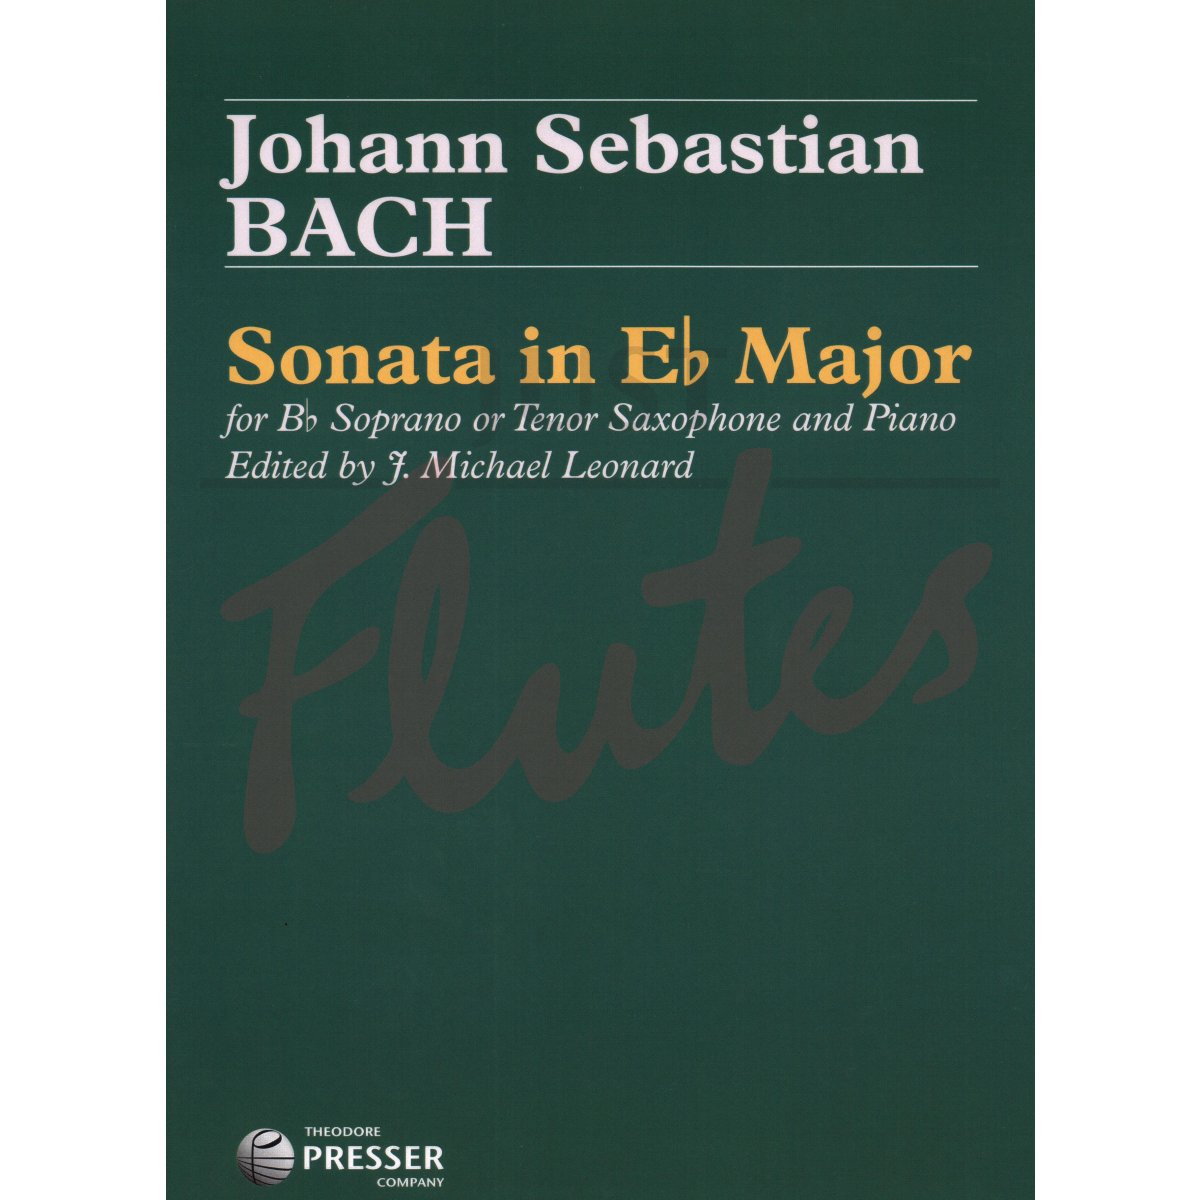 Sonata in Eb for Soprano or Tenor Saxophone and Piano